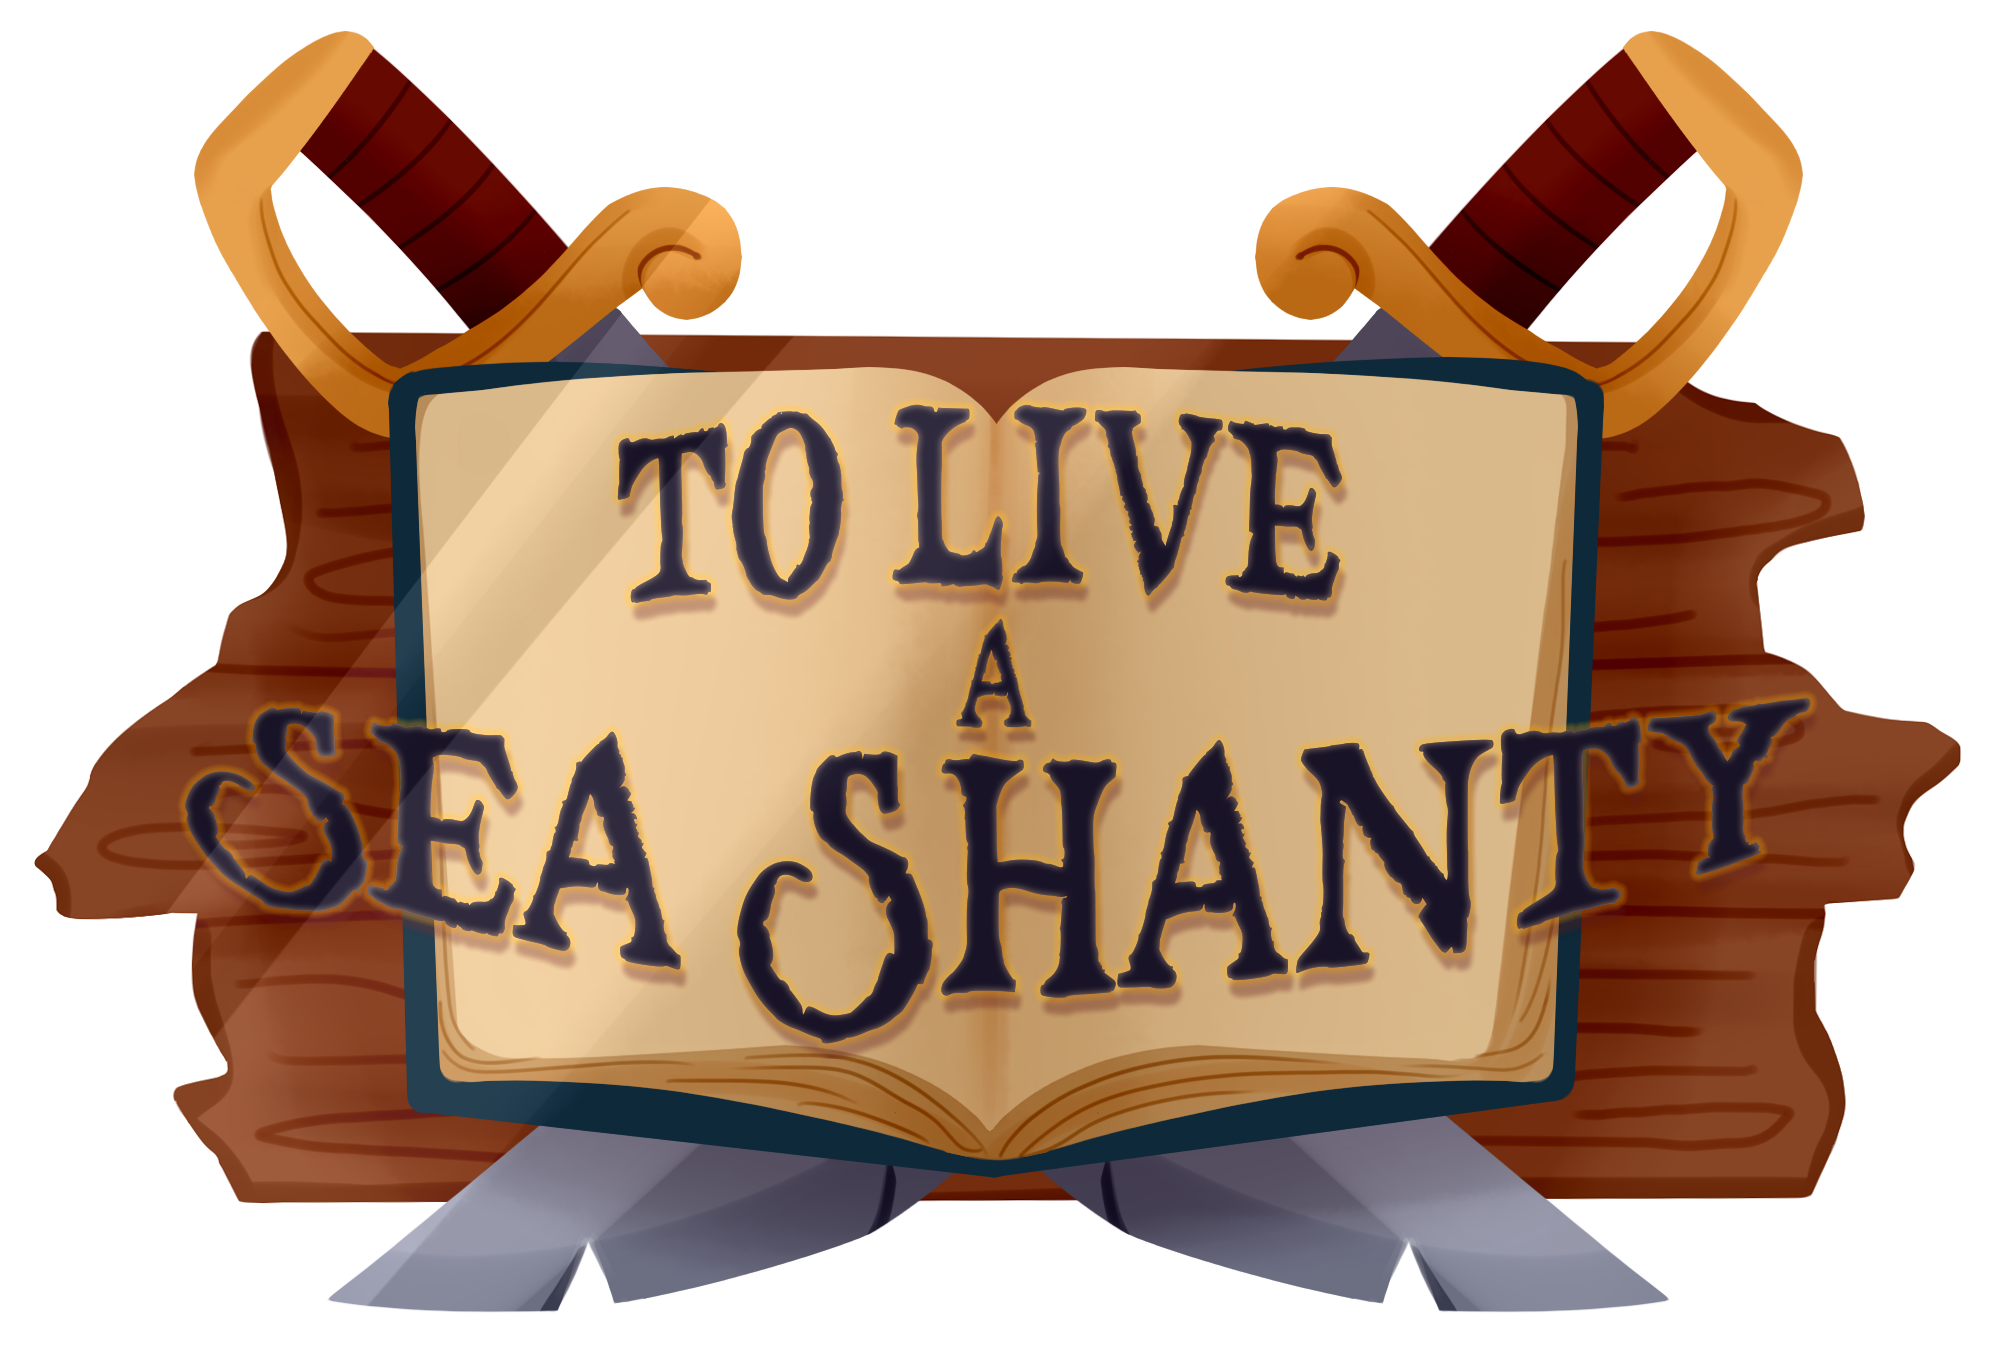 To Live a Sea Shanty